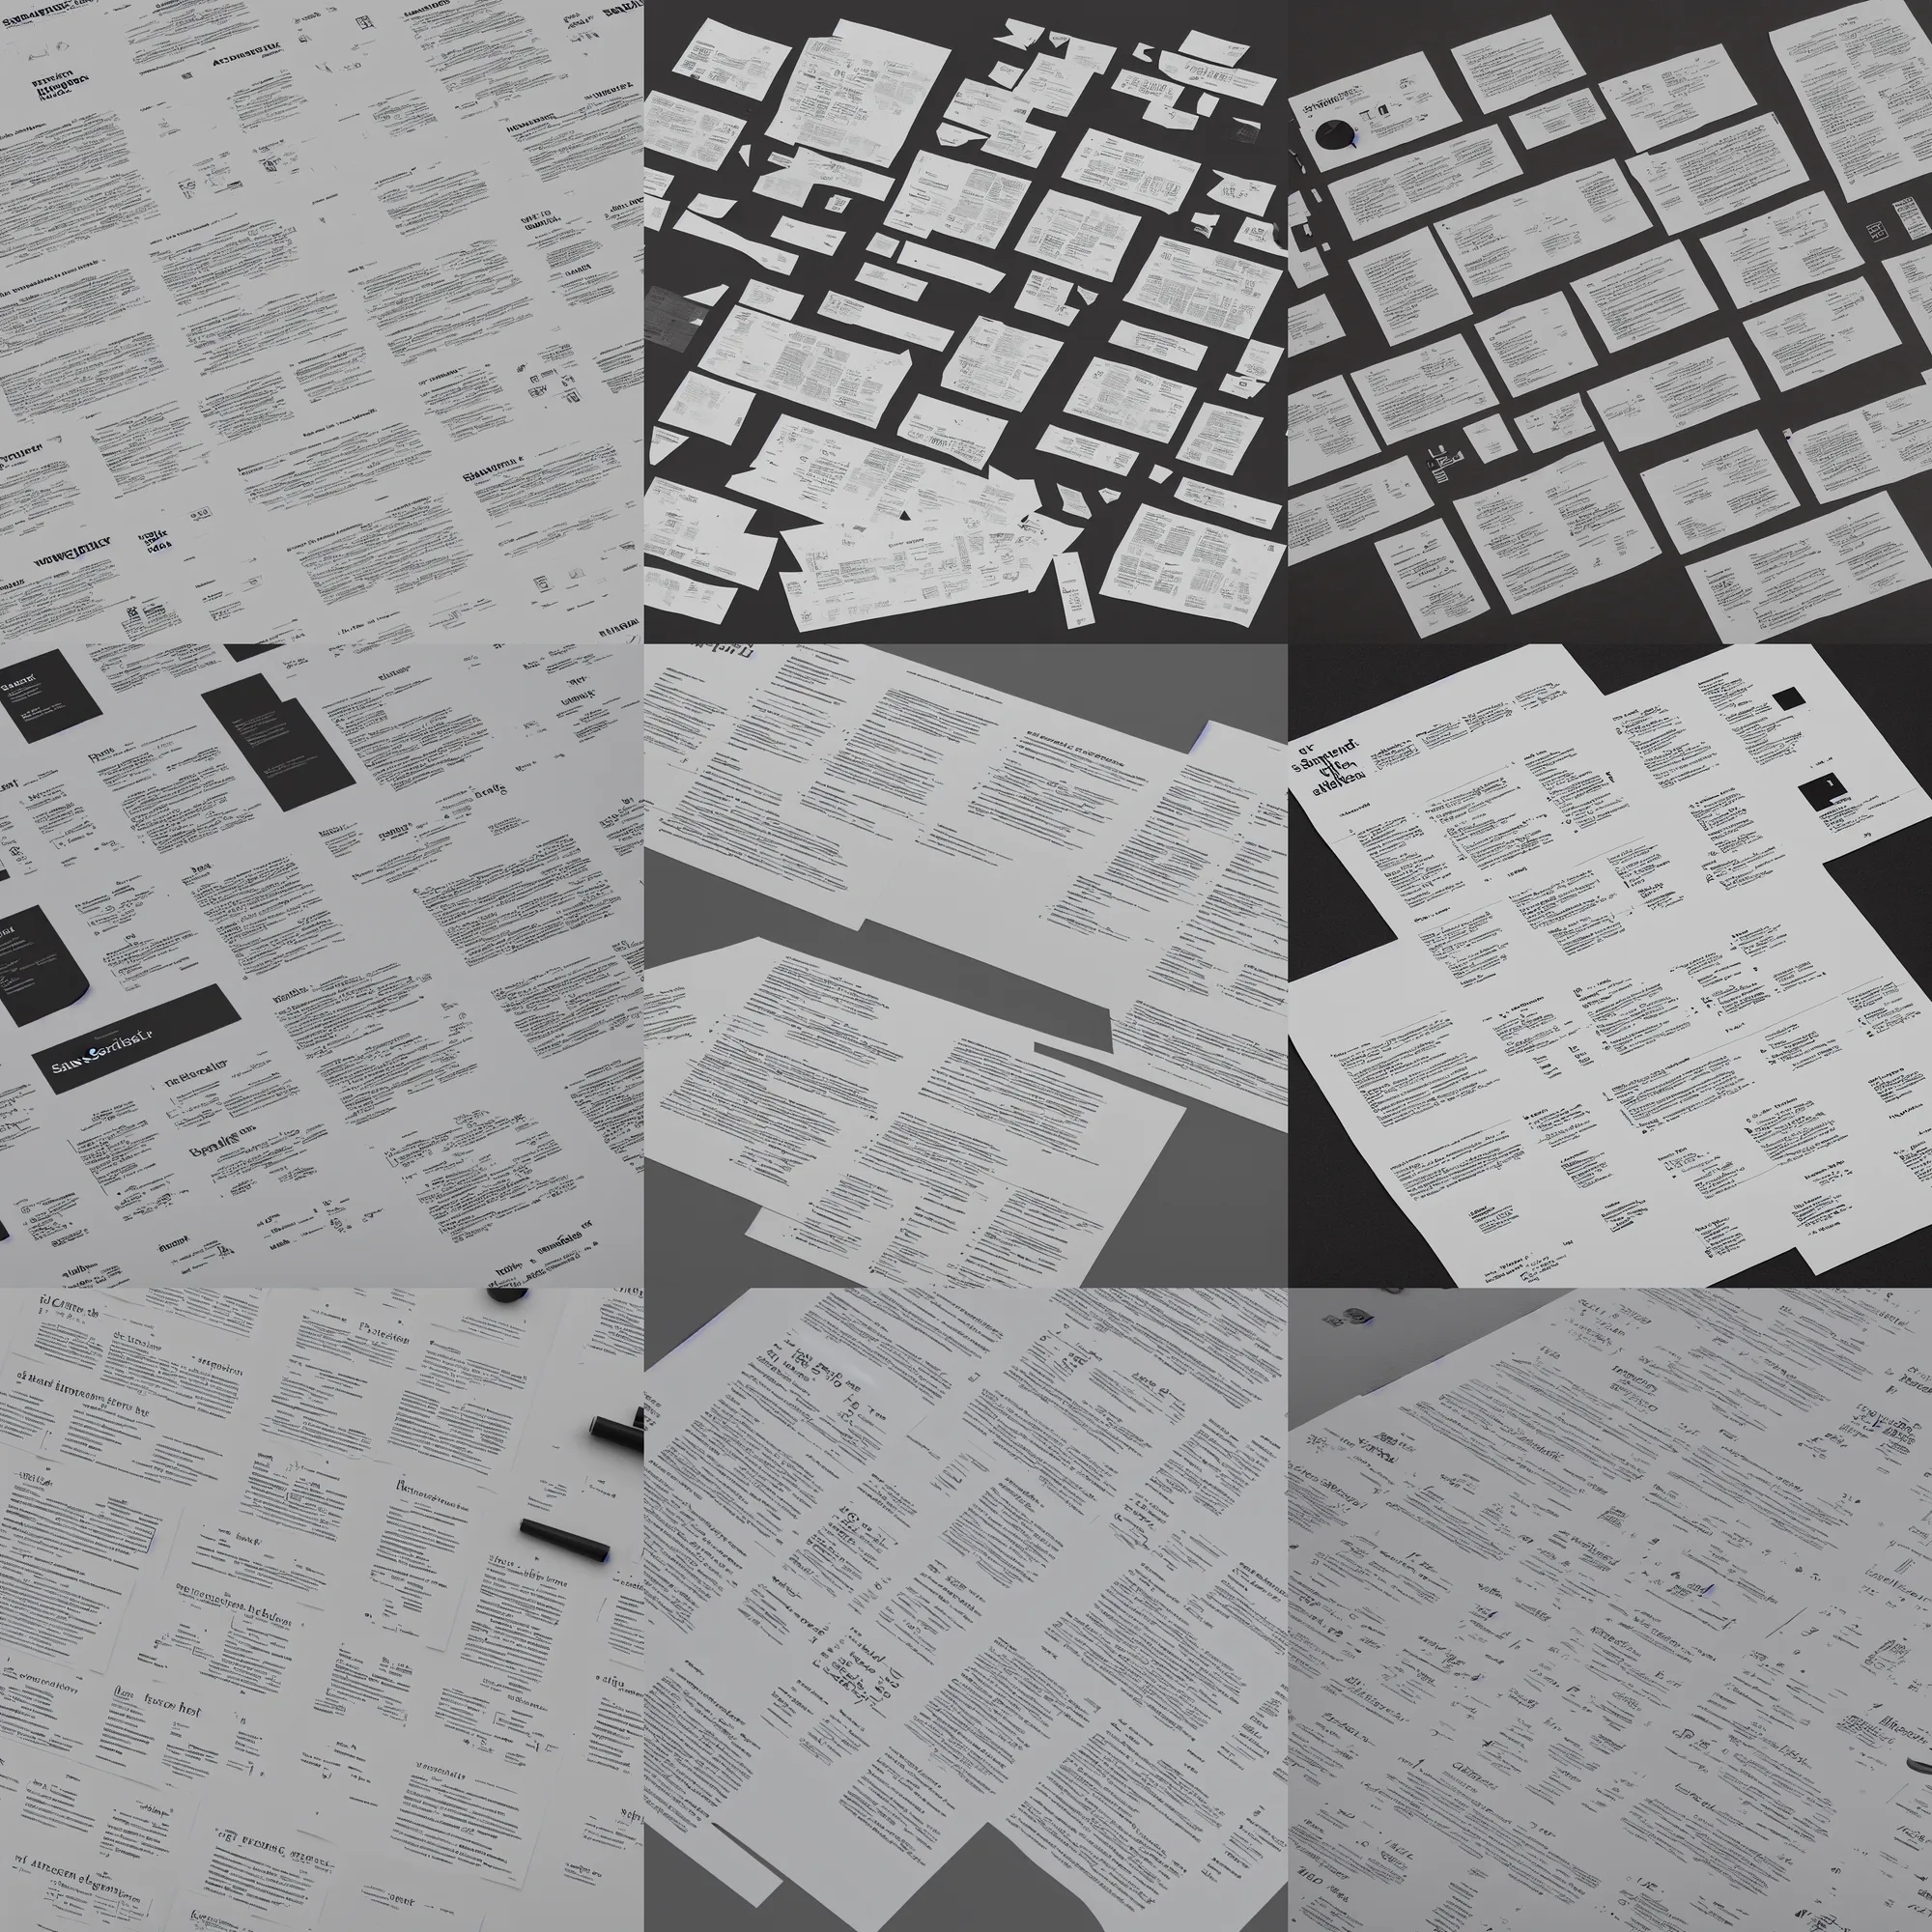 Prompt: typography specimen, sansserif helvetica, type sheet